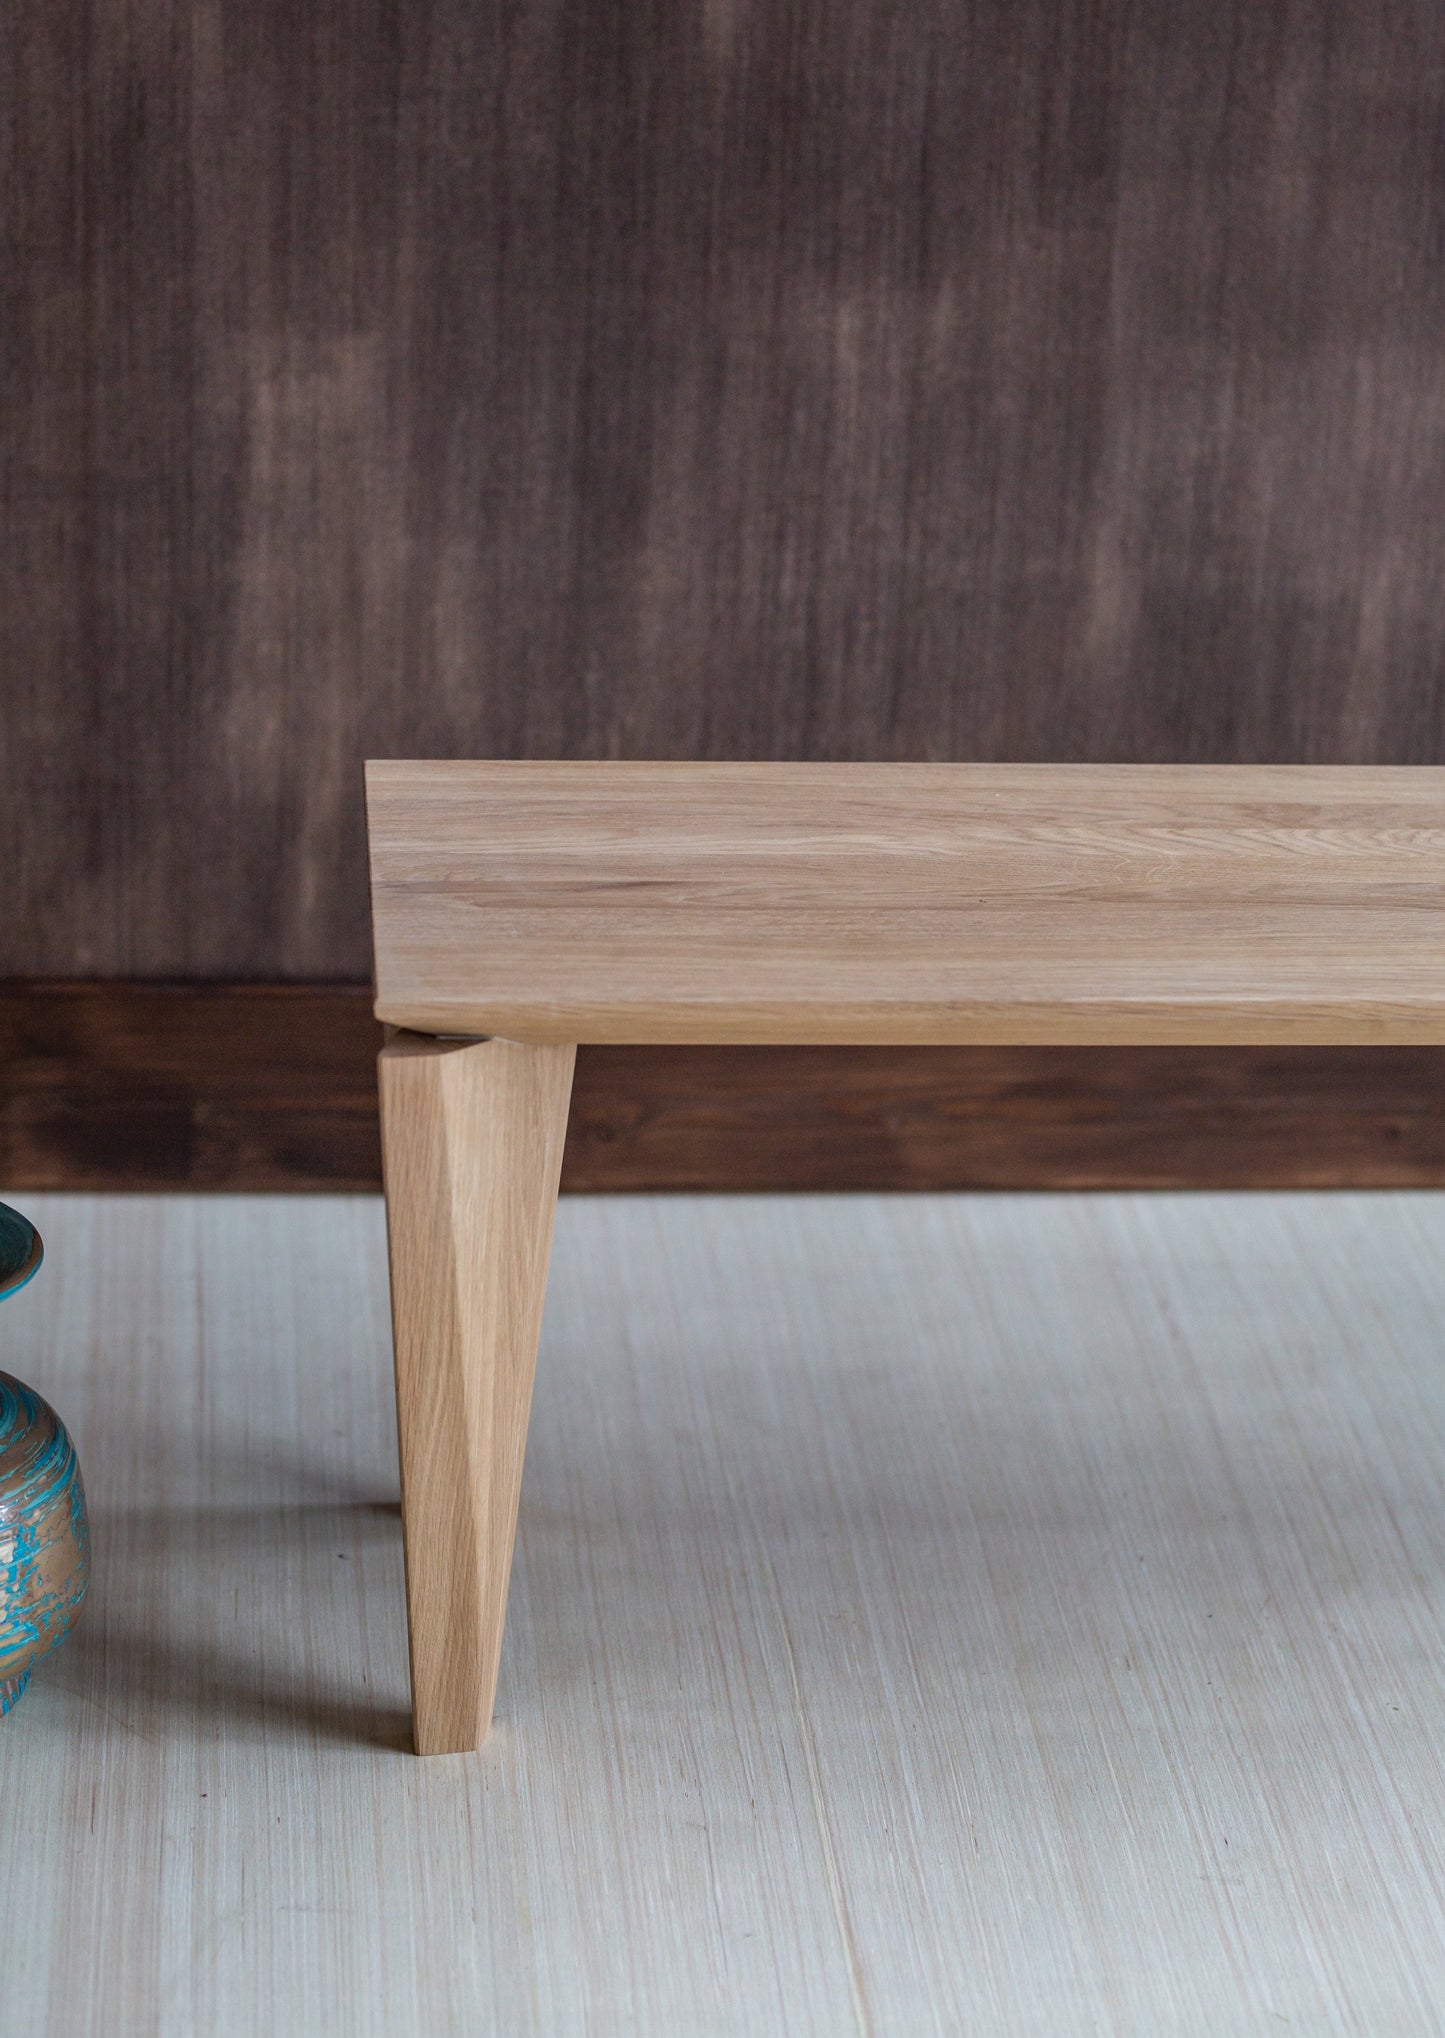 Sittebenk Kasu er laget av høyeste kvalitet lys eik. Denne sittebenken har elegante og moderne former, med unike bein.